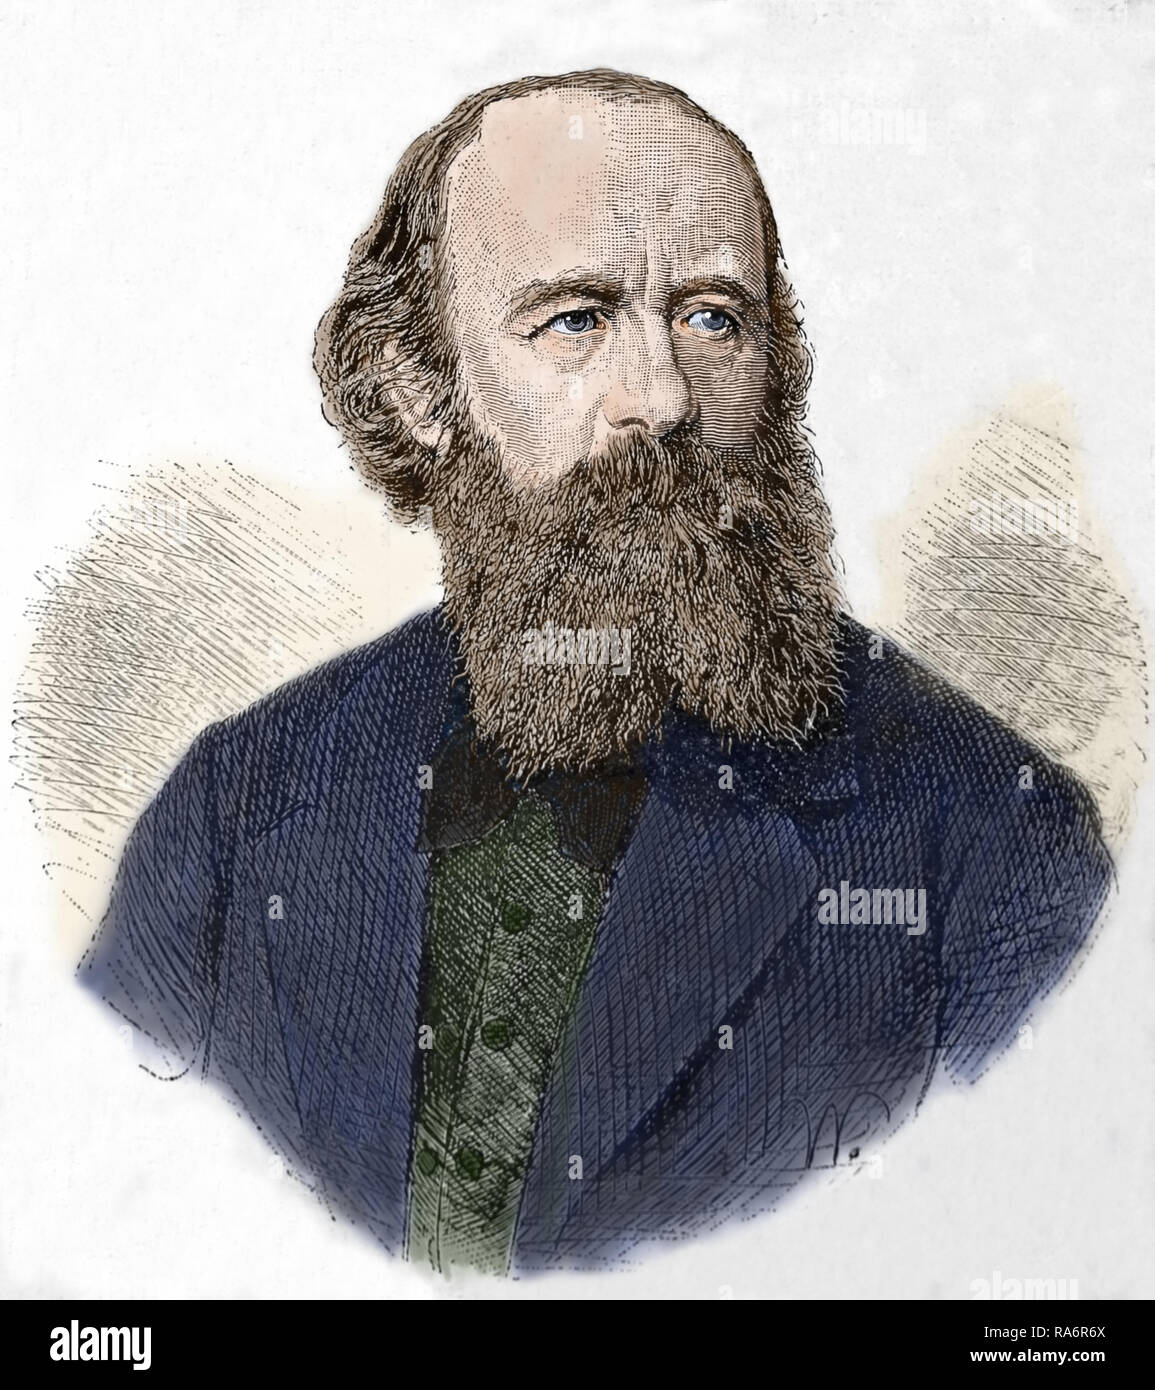 Johannes Schilling (1828-1910), deutscher Bildhauer. Porträt, Kupferstich aus dem 19. Jahrhundert. Später Färbung. Stockfoto